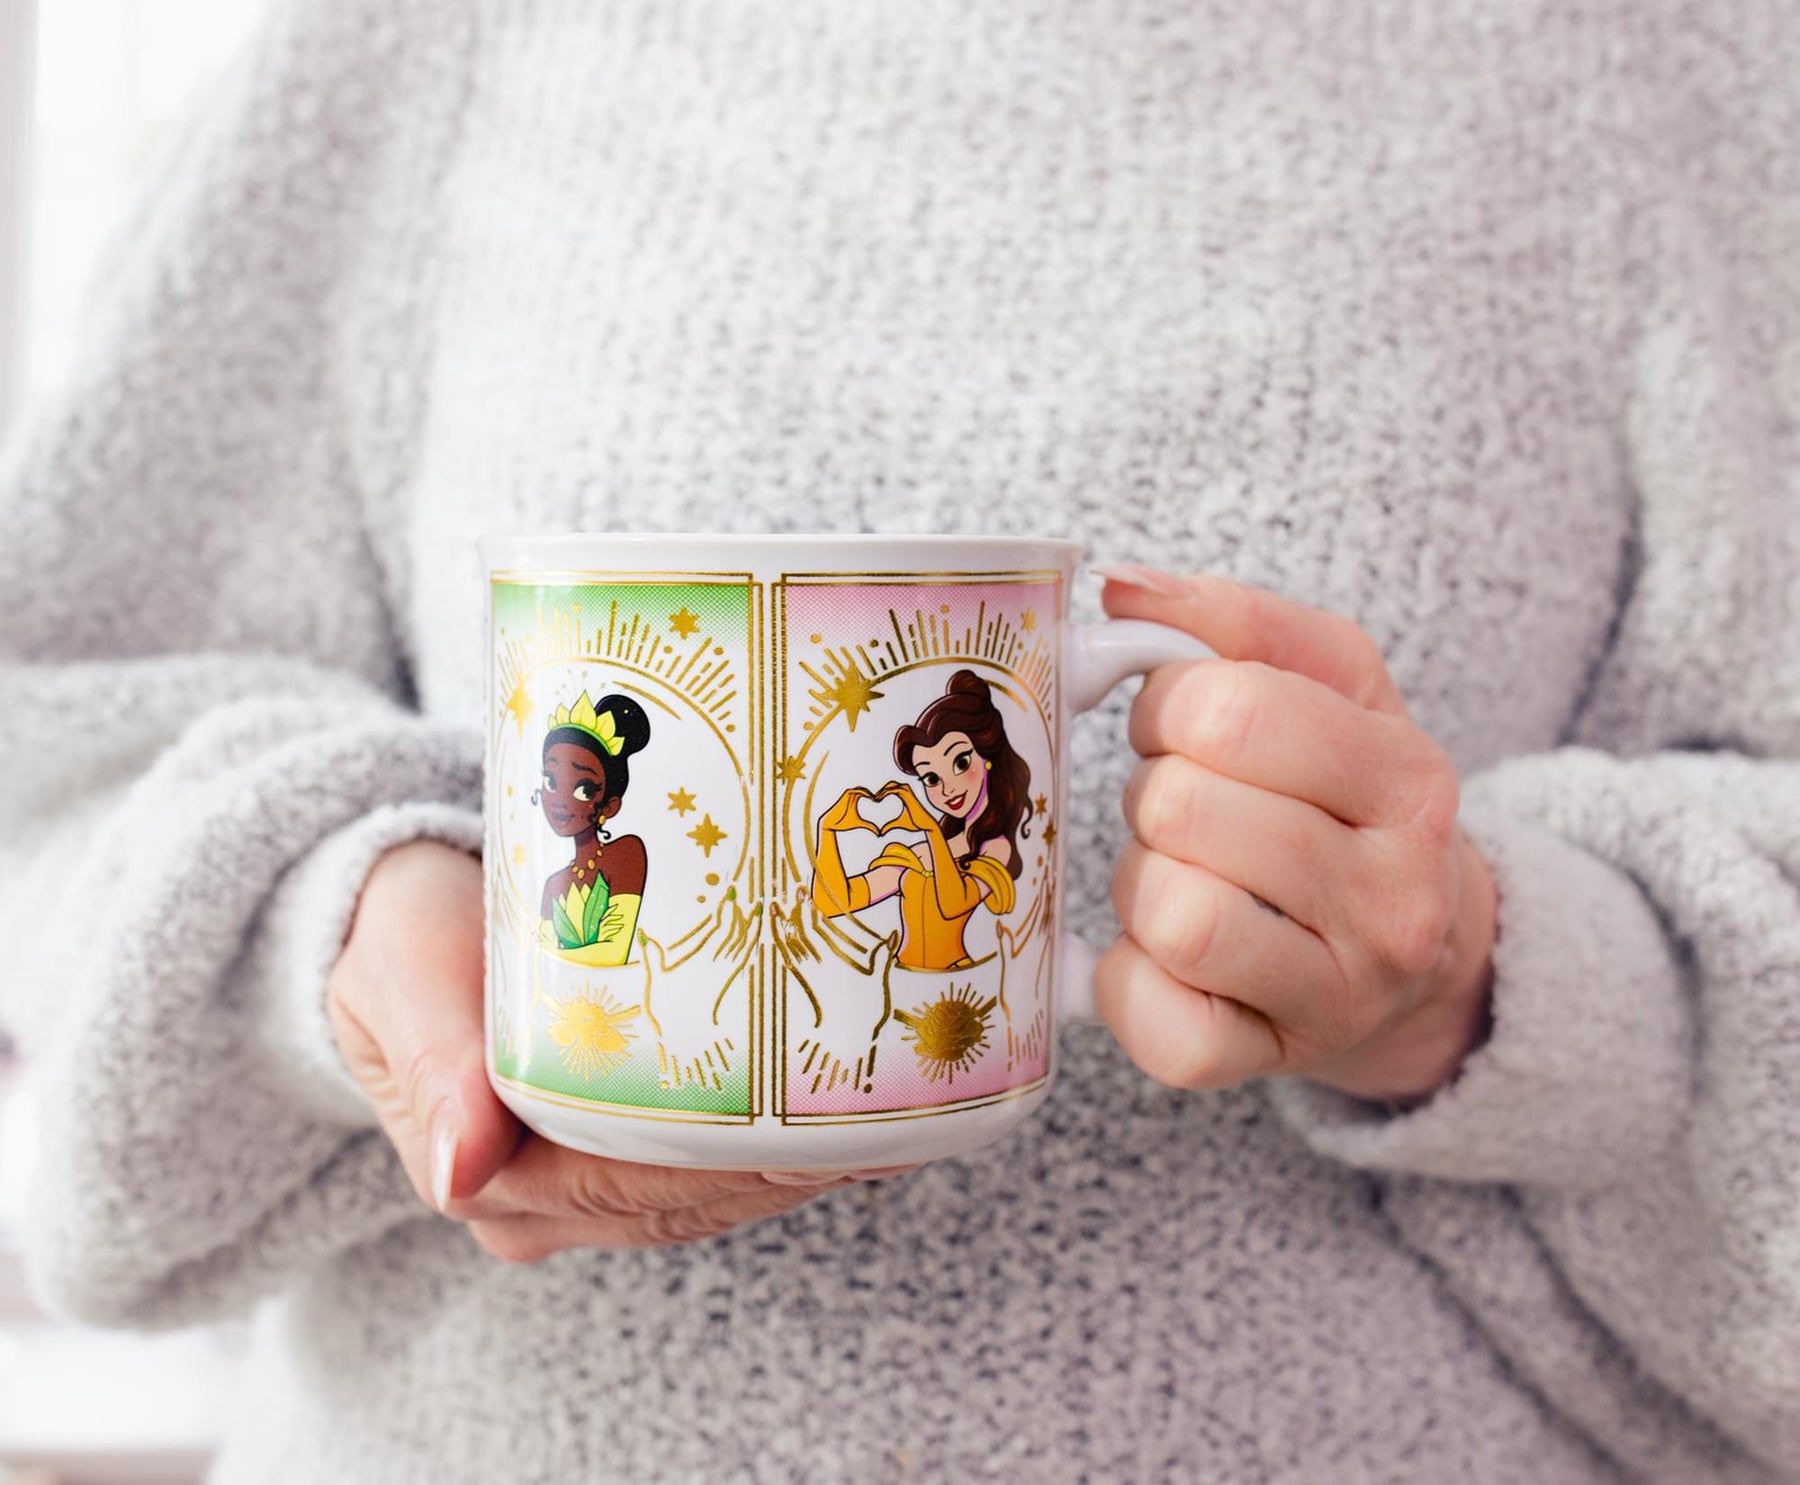 Disney Princess "I Make My Own Magic" Foil Ceramic Mug | Holds 20 Ounces